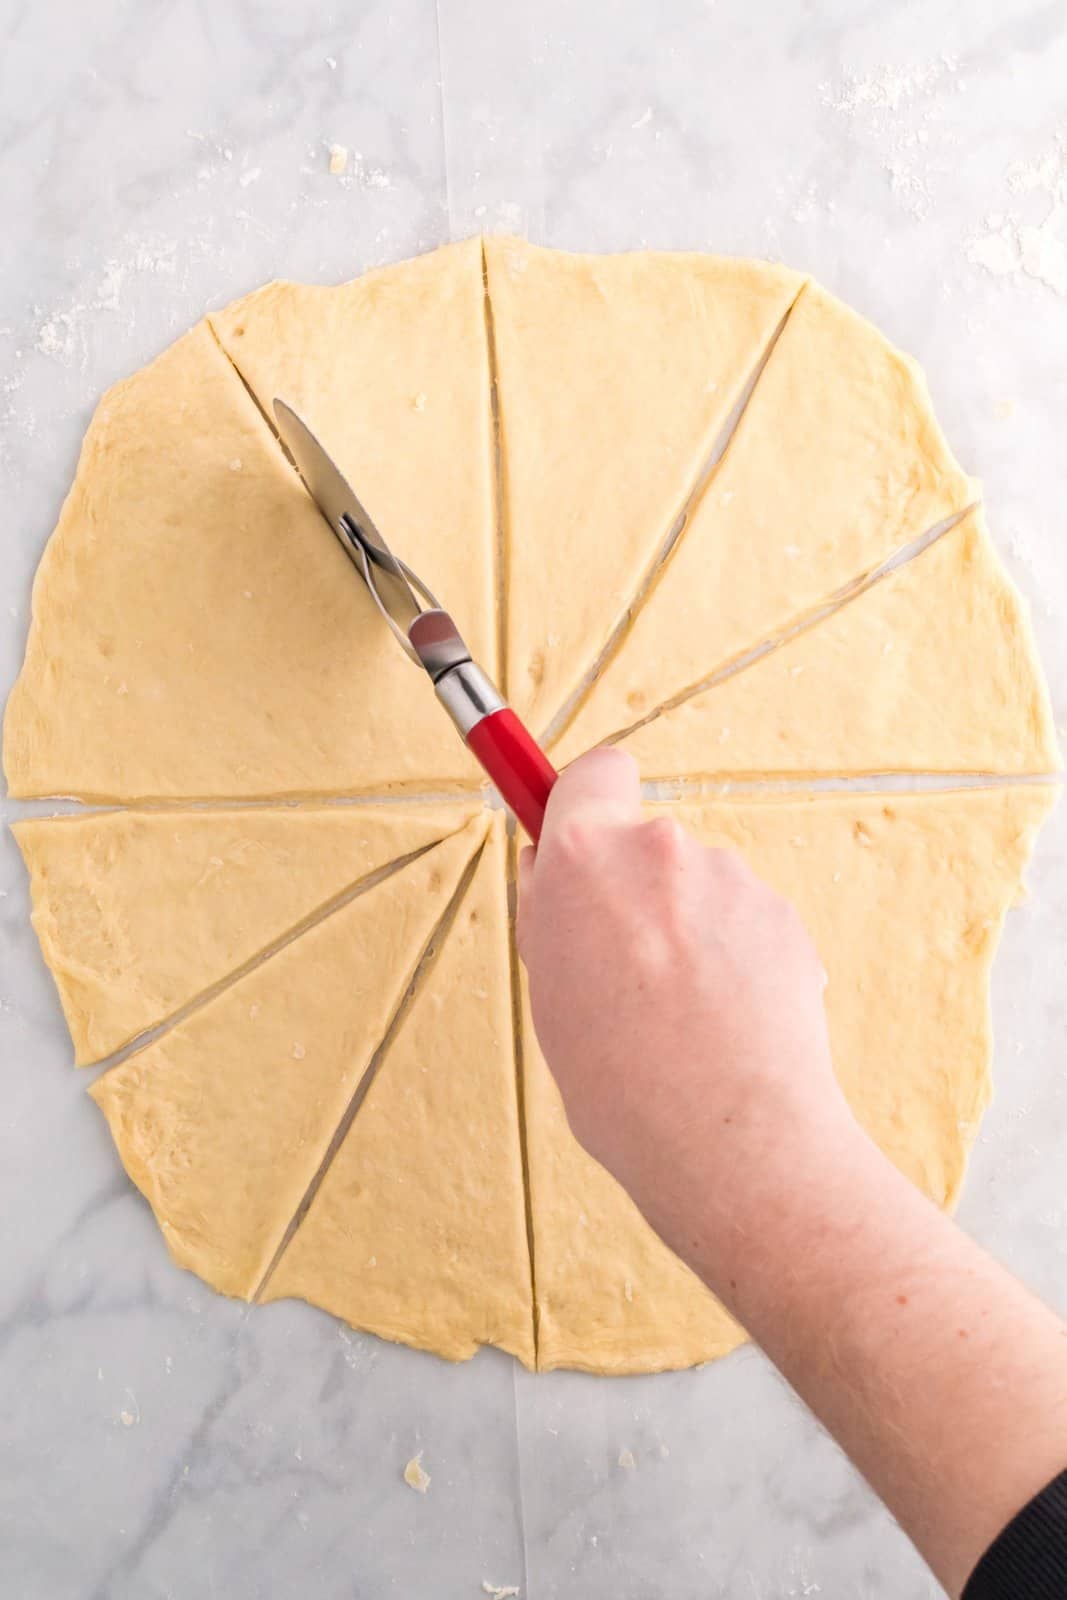 Pasta tagliata in 12 triangoli.